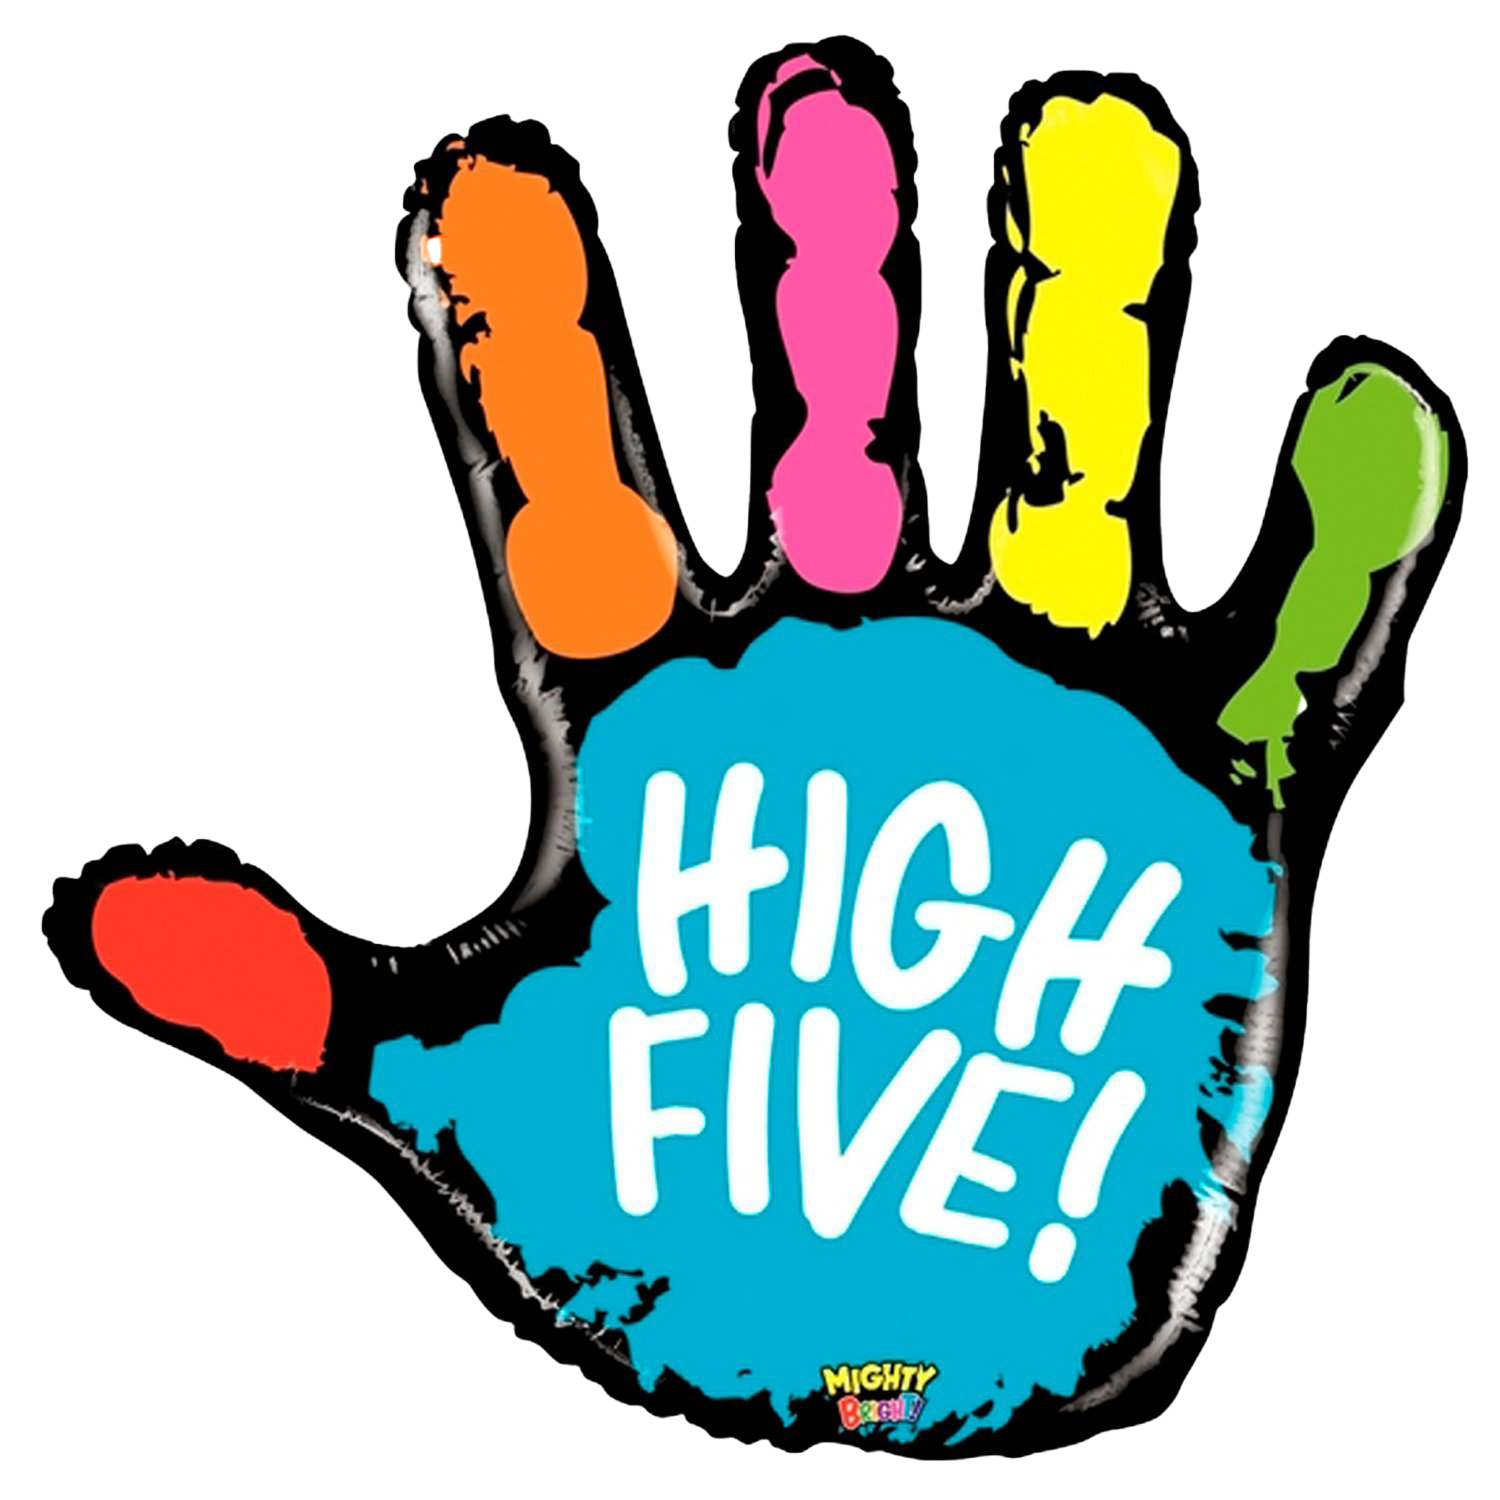 Be high five. High Five. High Five картинка. Пятюня значок. Пятюня картинки.